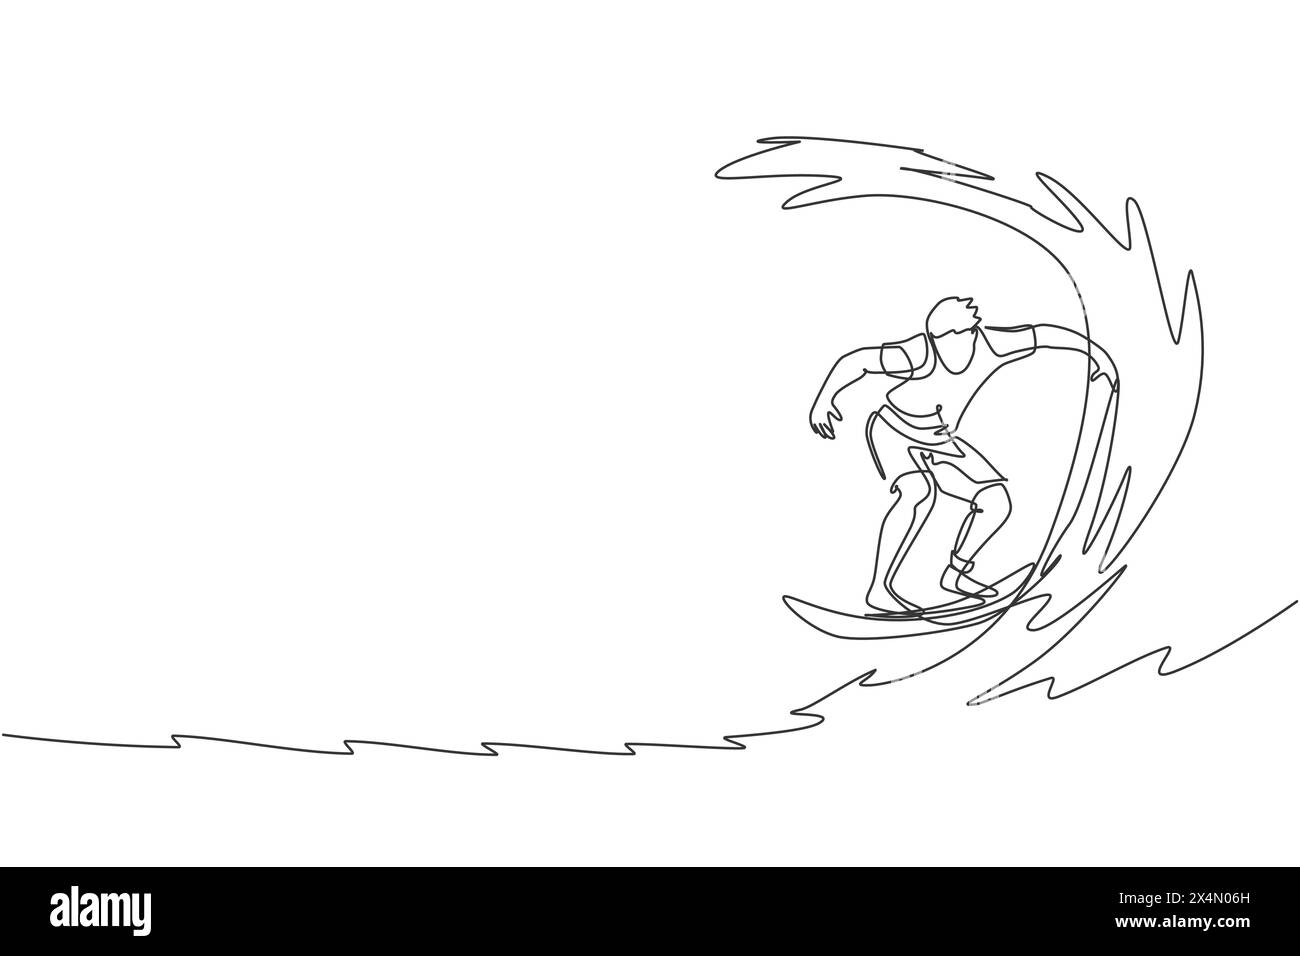 Ligne continue unique dessinant jeune surfeur professionnel en action chevauchant les vagues sur l'océan bleu. Concept de sports nautiques extrêmes. Vacances d'été. Tendance Illustration de Vecteur